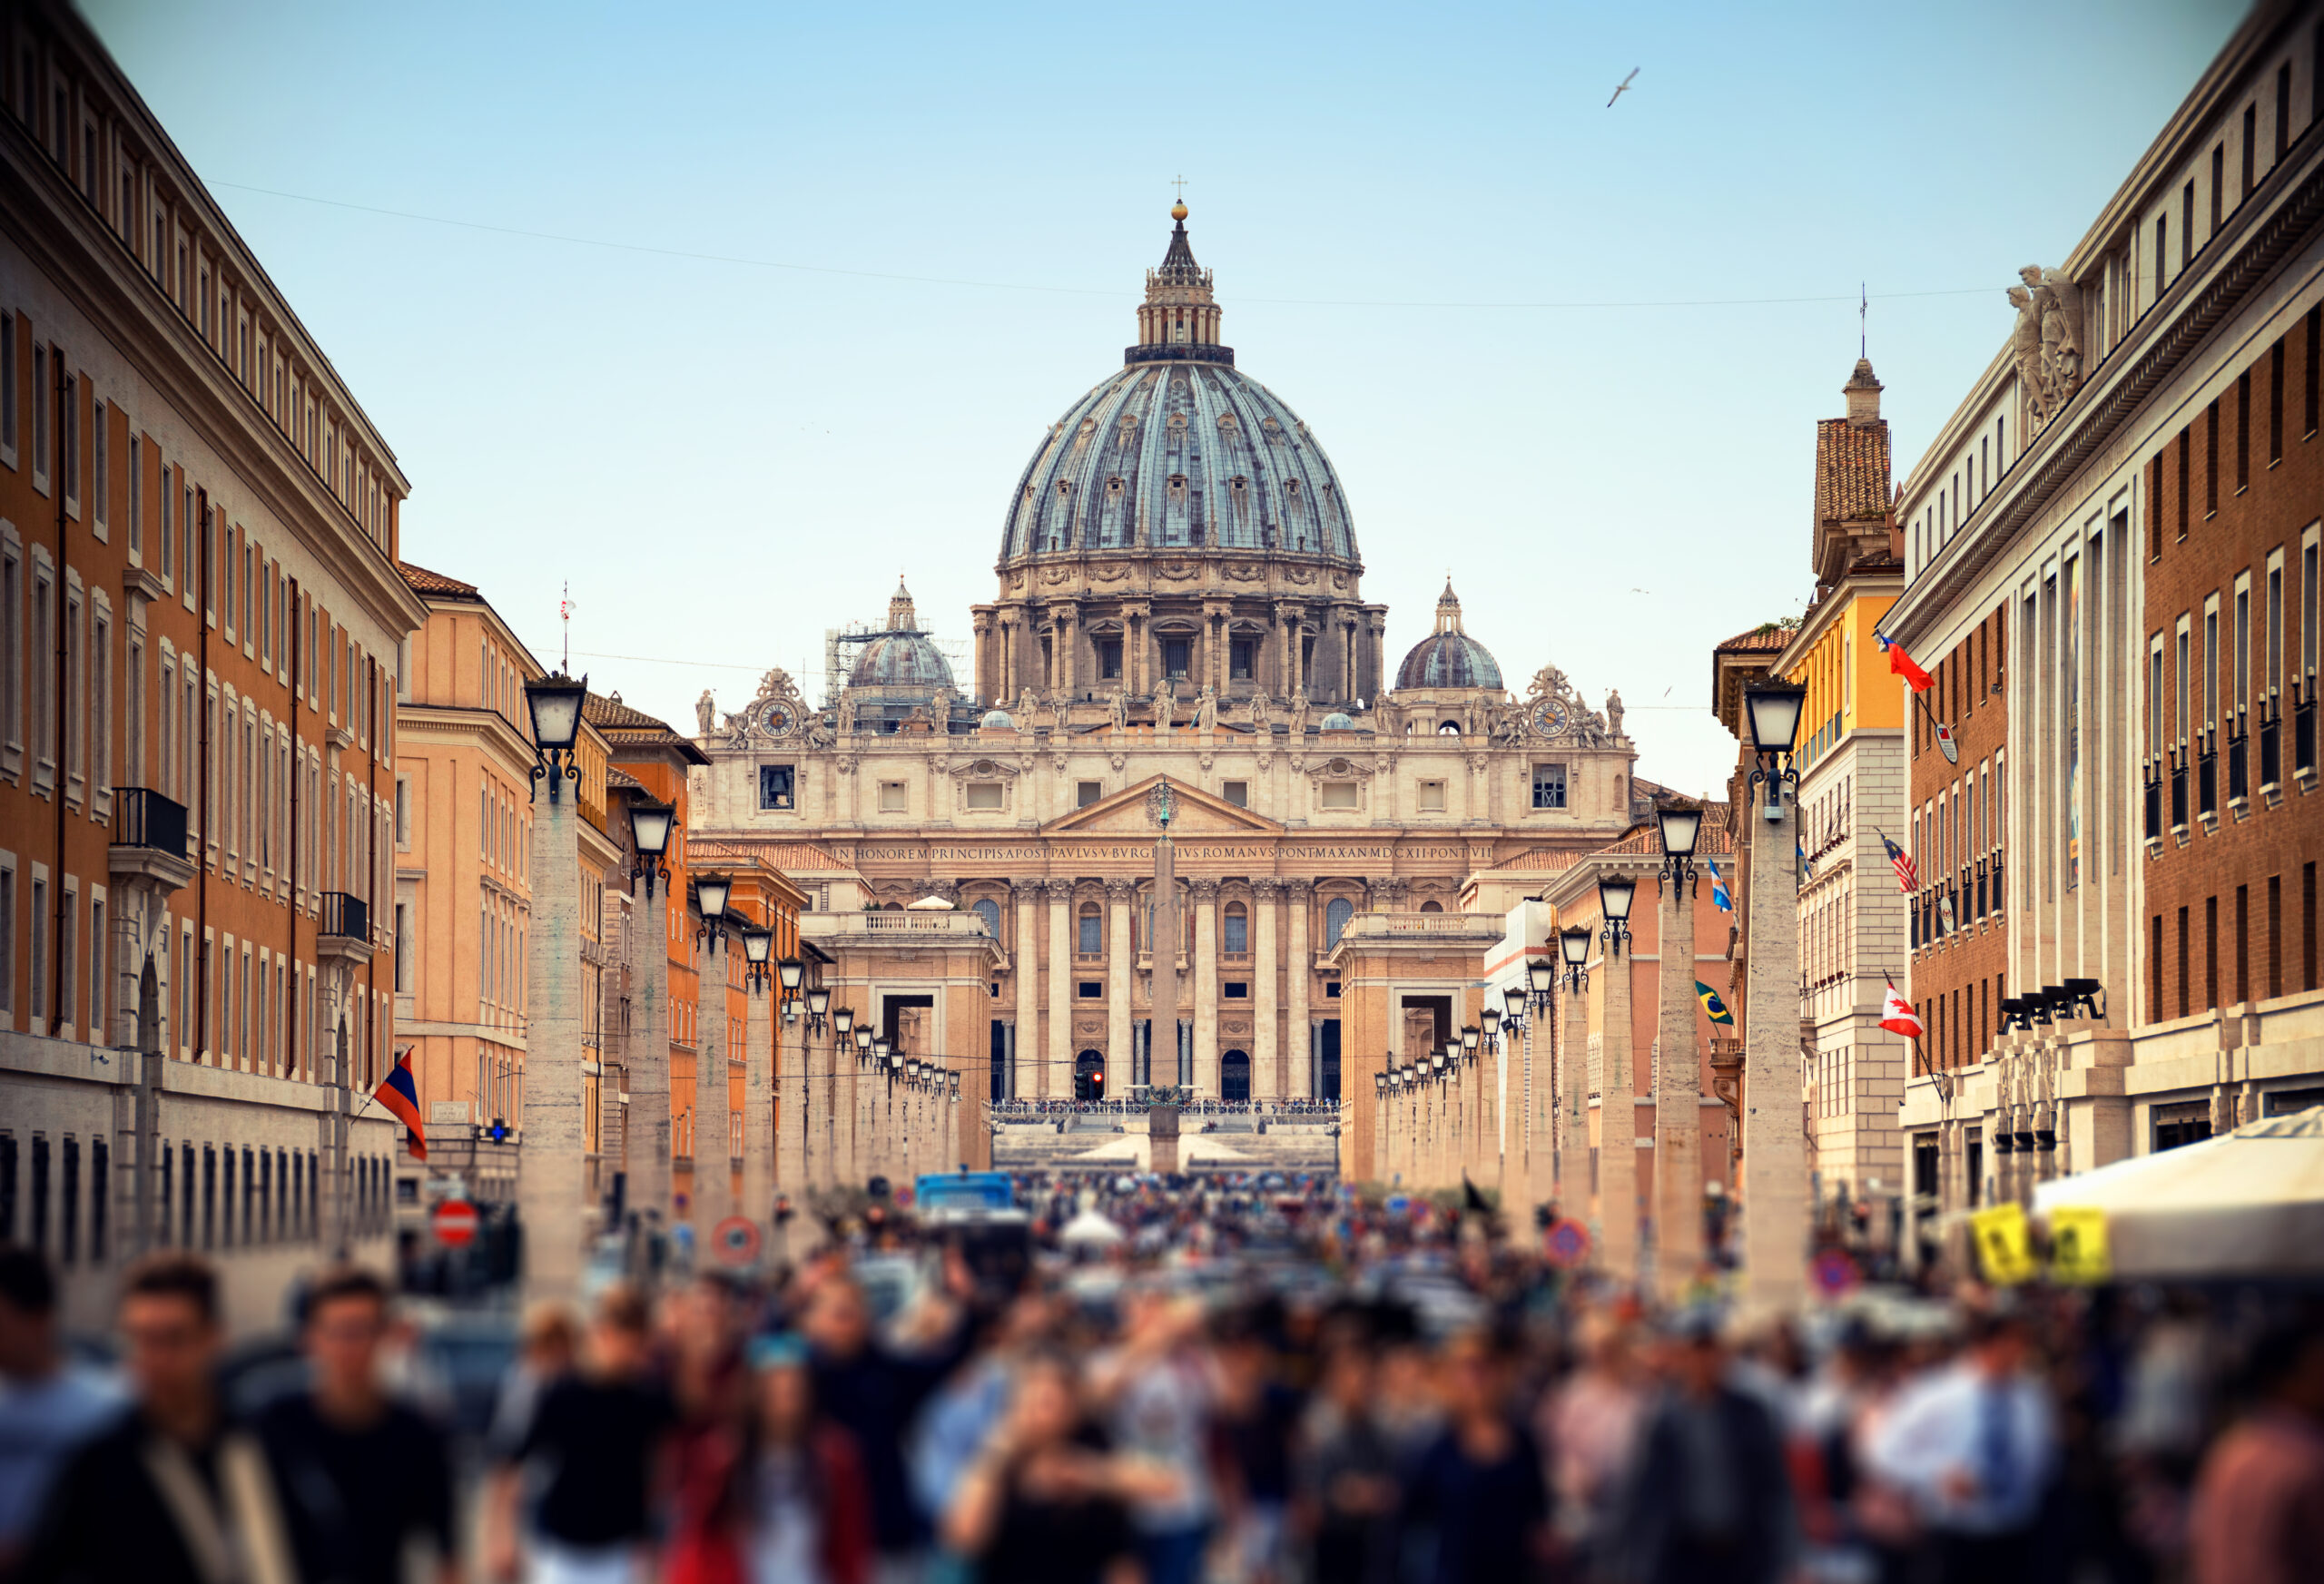 Turista tenta escapar após quebrar estátua no Vaticano